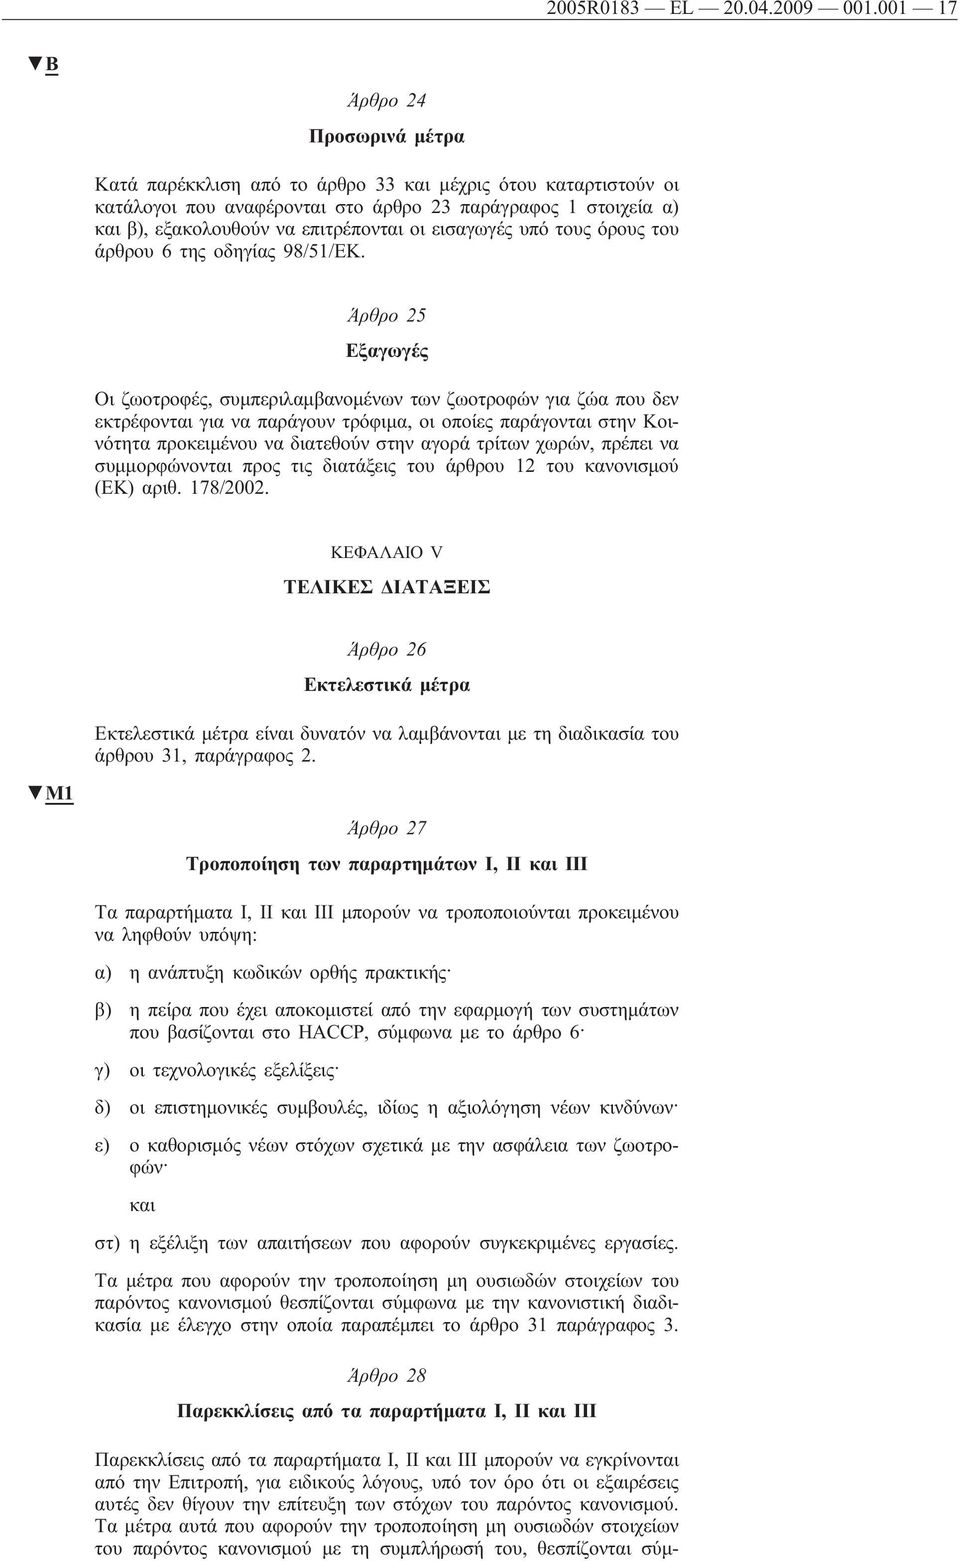 εισαγωγές υπό τους όρους του άρθρου 6 της οδηγίας 98/51/ΕΚ.